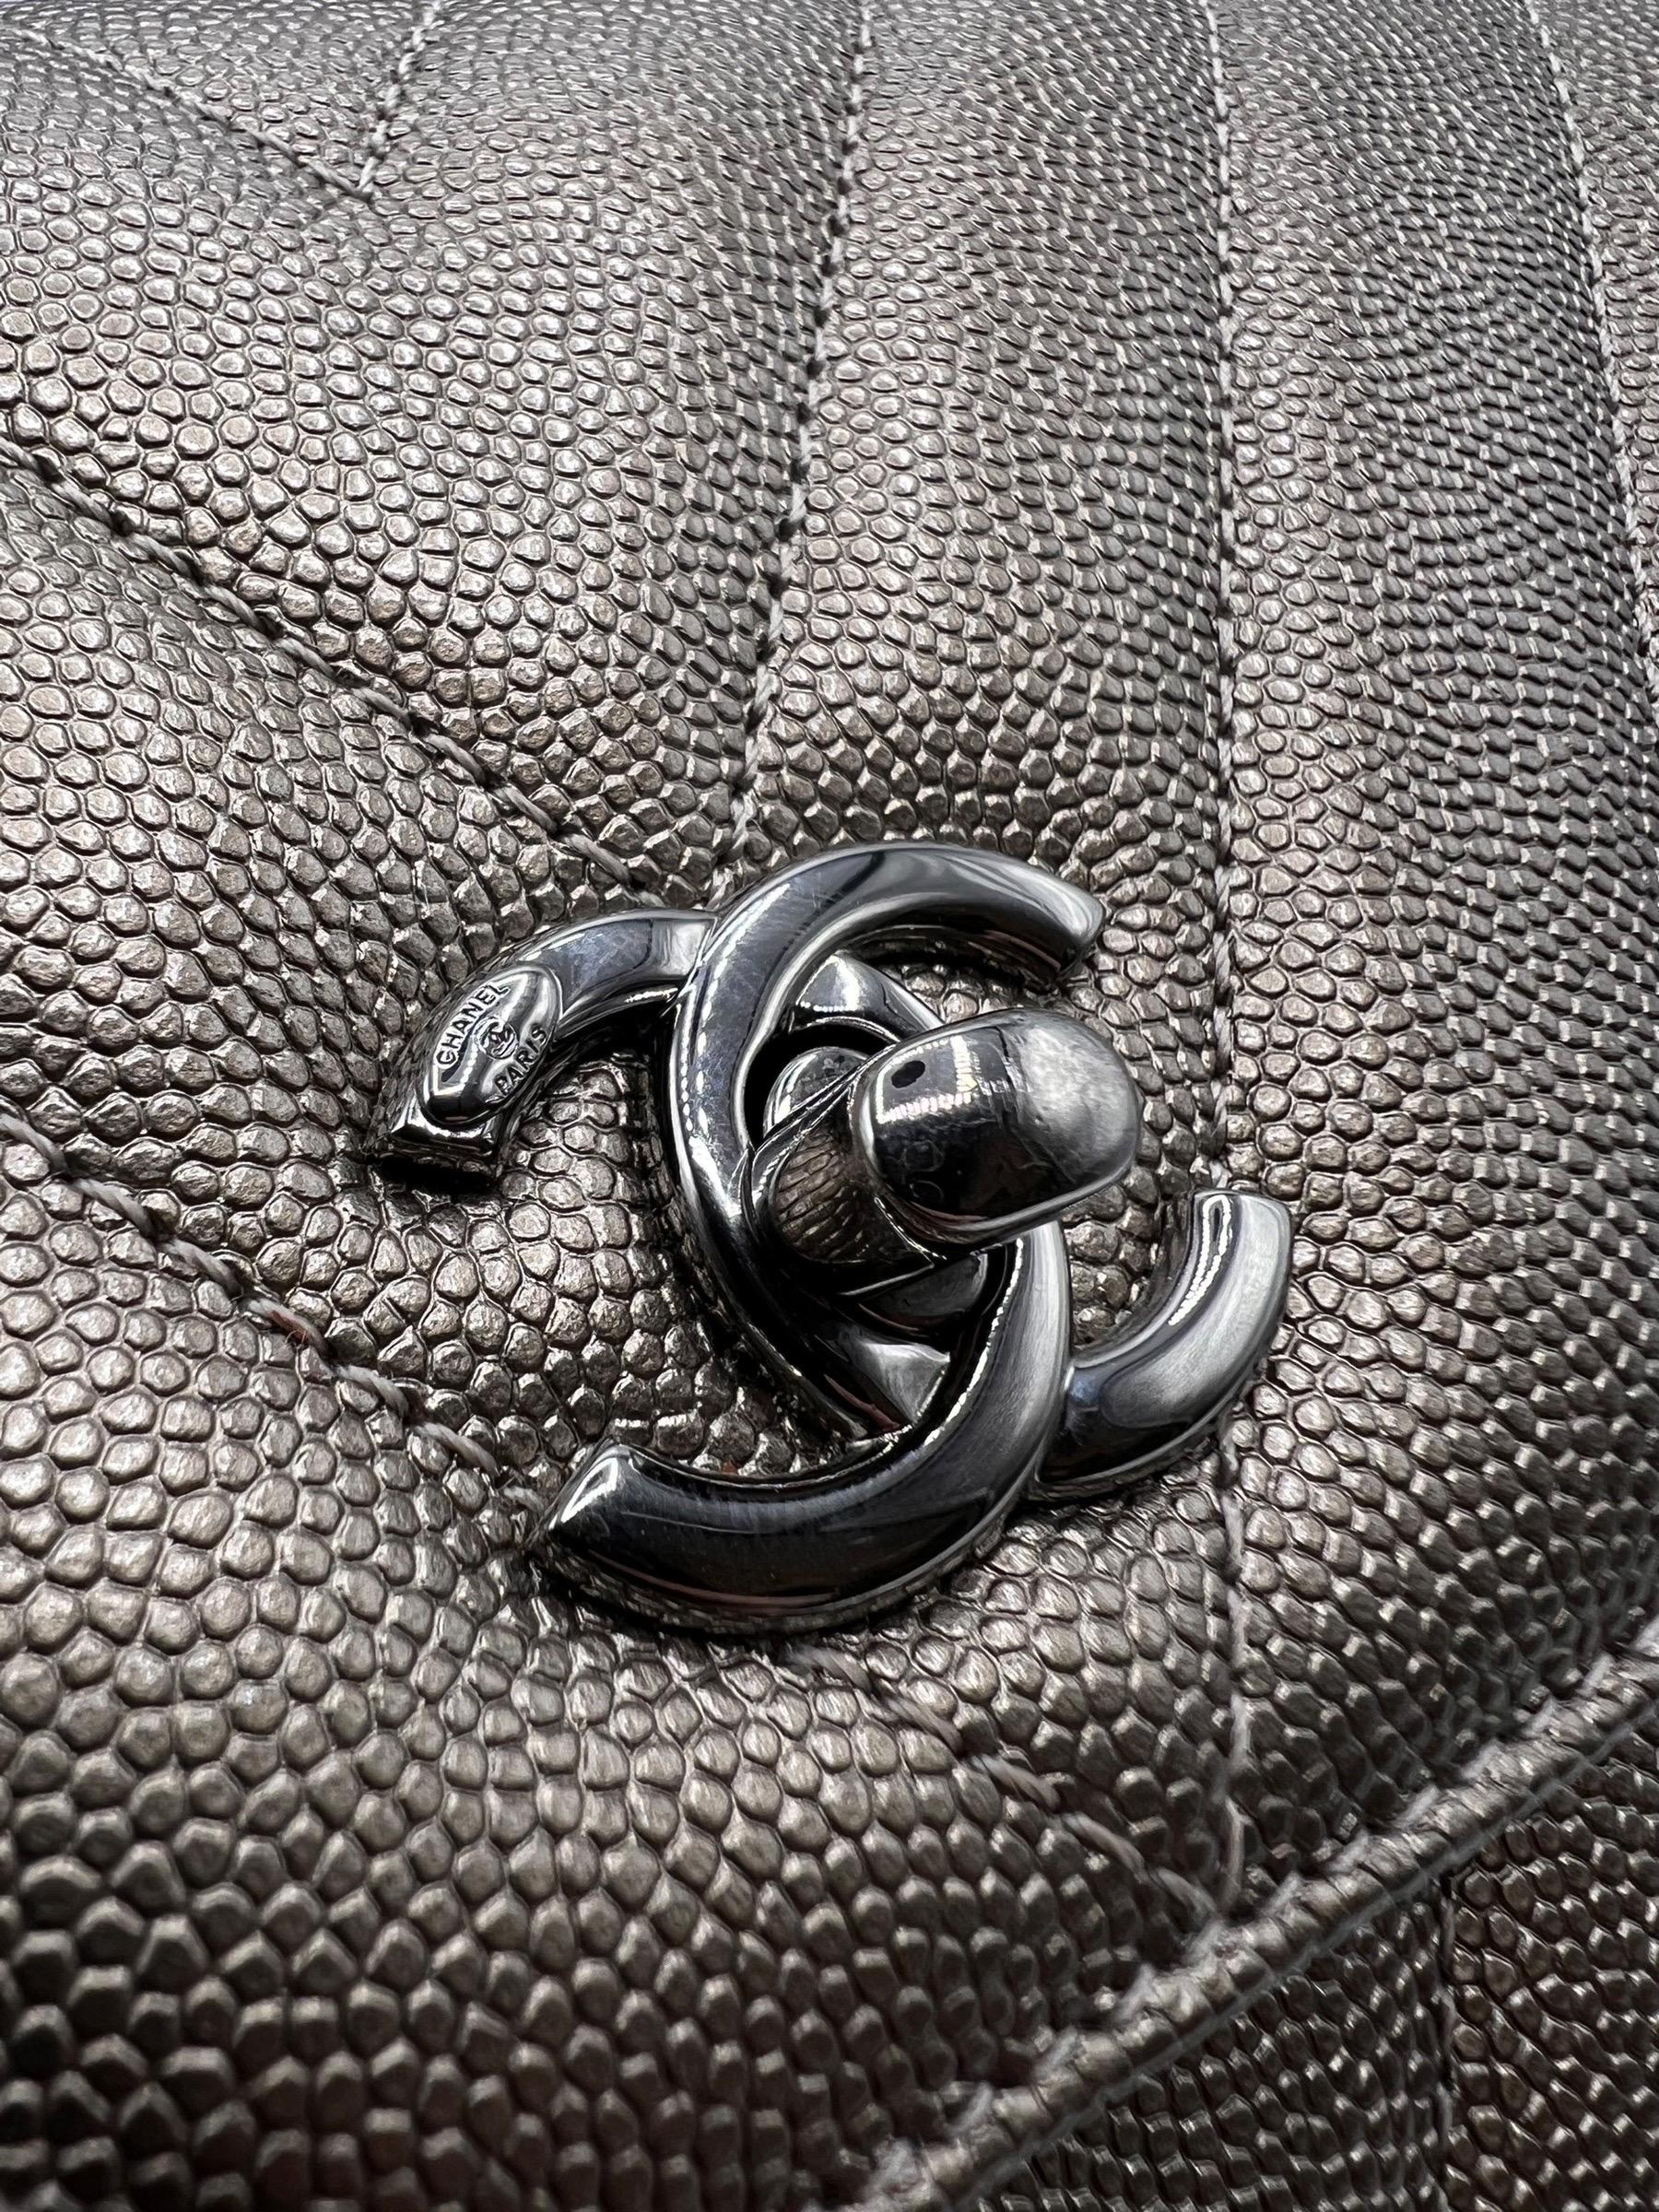 Borsa firmata Chanel, modello Coco Handle, misura mini, realizzata in pelle caviar metallizzata bronzo con hardware in colorazione argento. Dotata di una patta frontale con chiusura a girello e classico logo CC, internamente rivestita in tessuto,